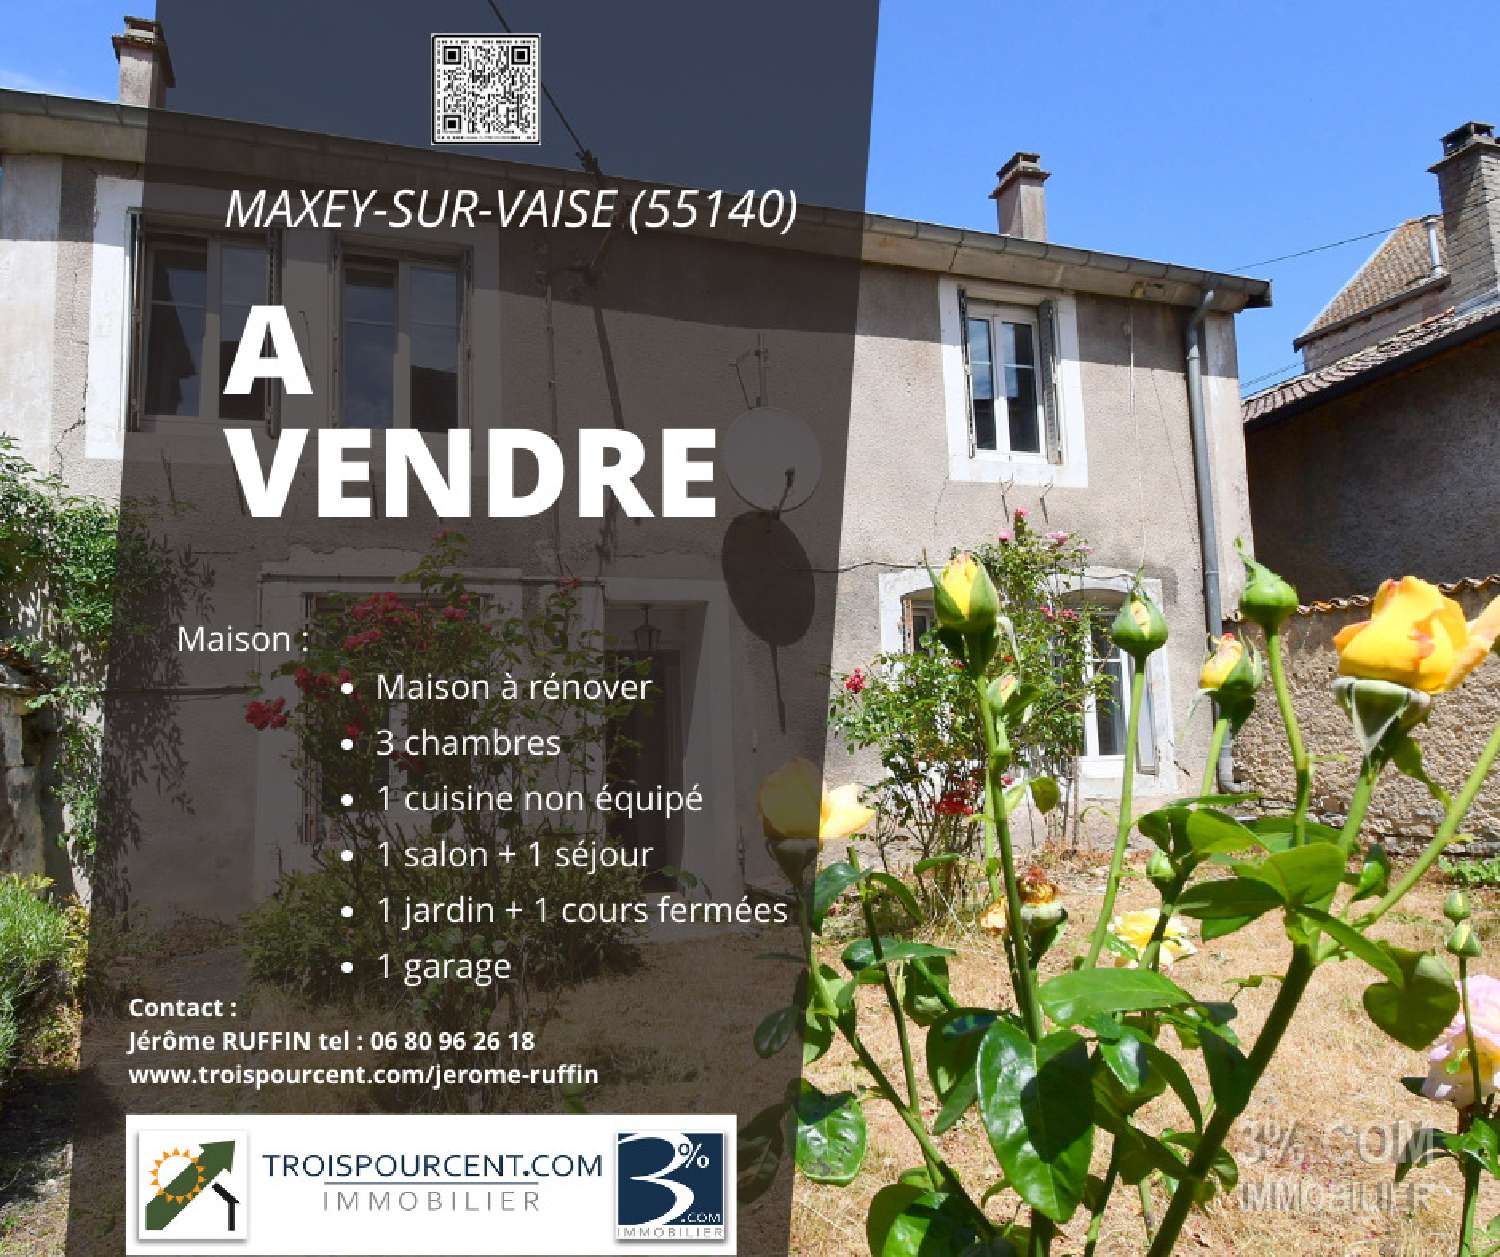 Maxey-sur-Vaise Meuse maison de village foto 6827254